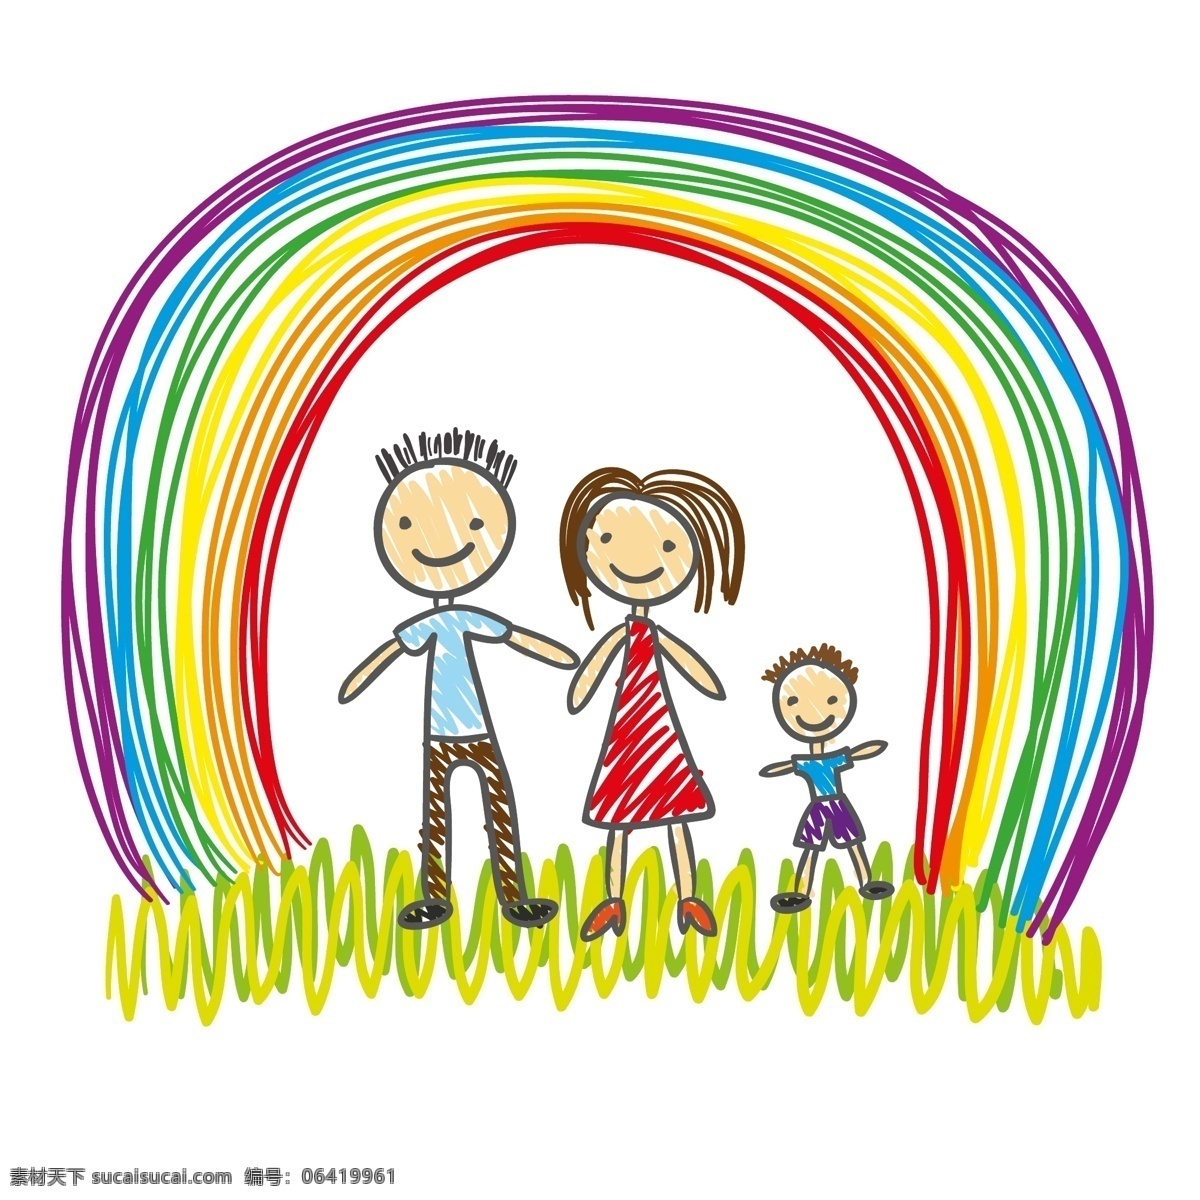 彩虹 下 一家人 儿童画 手绘 矢量图 矢量人物